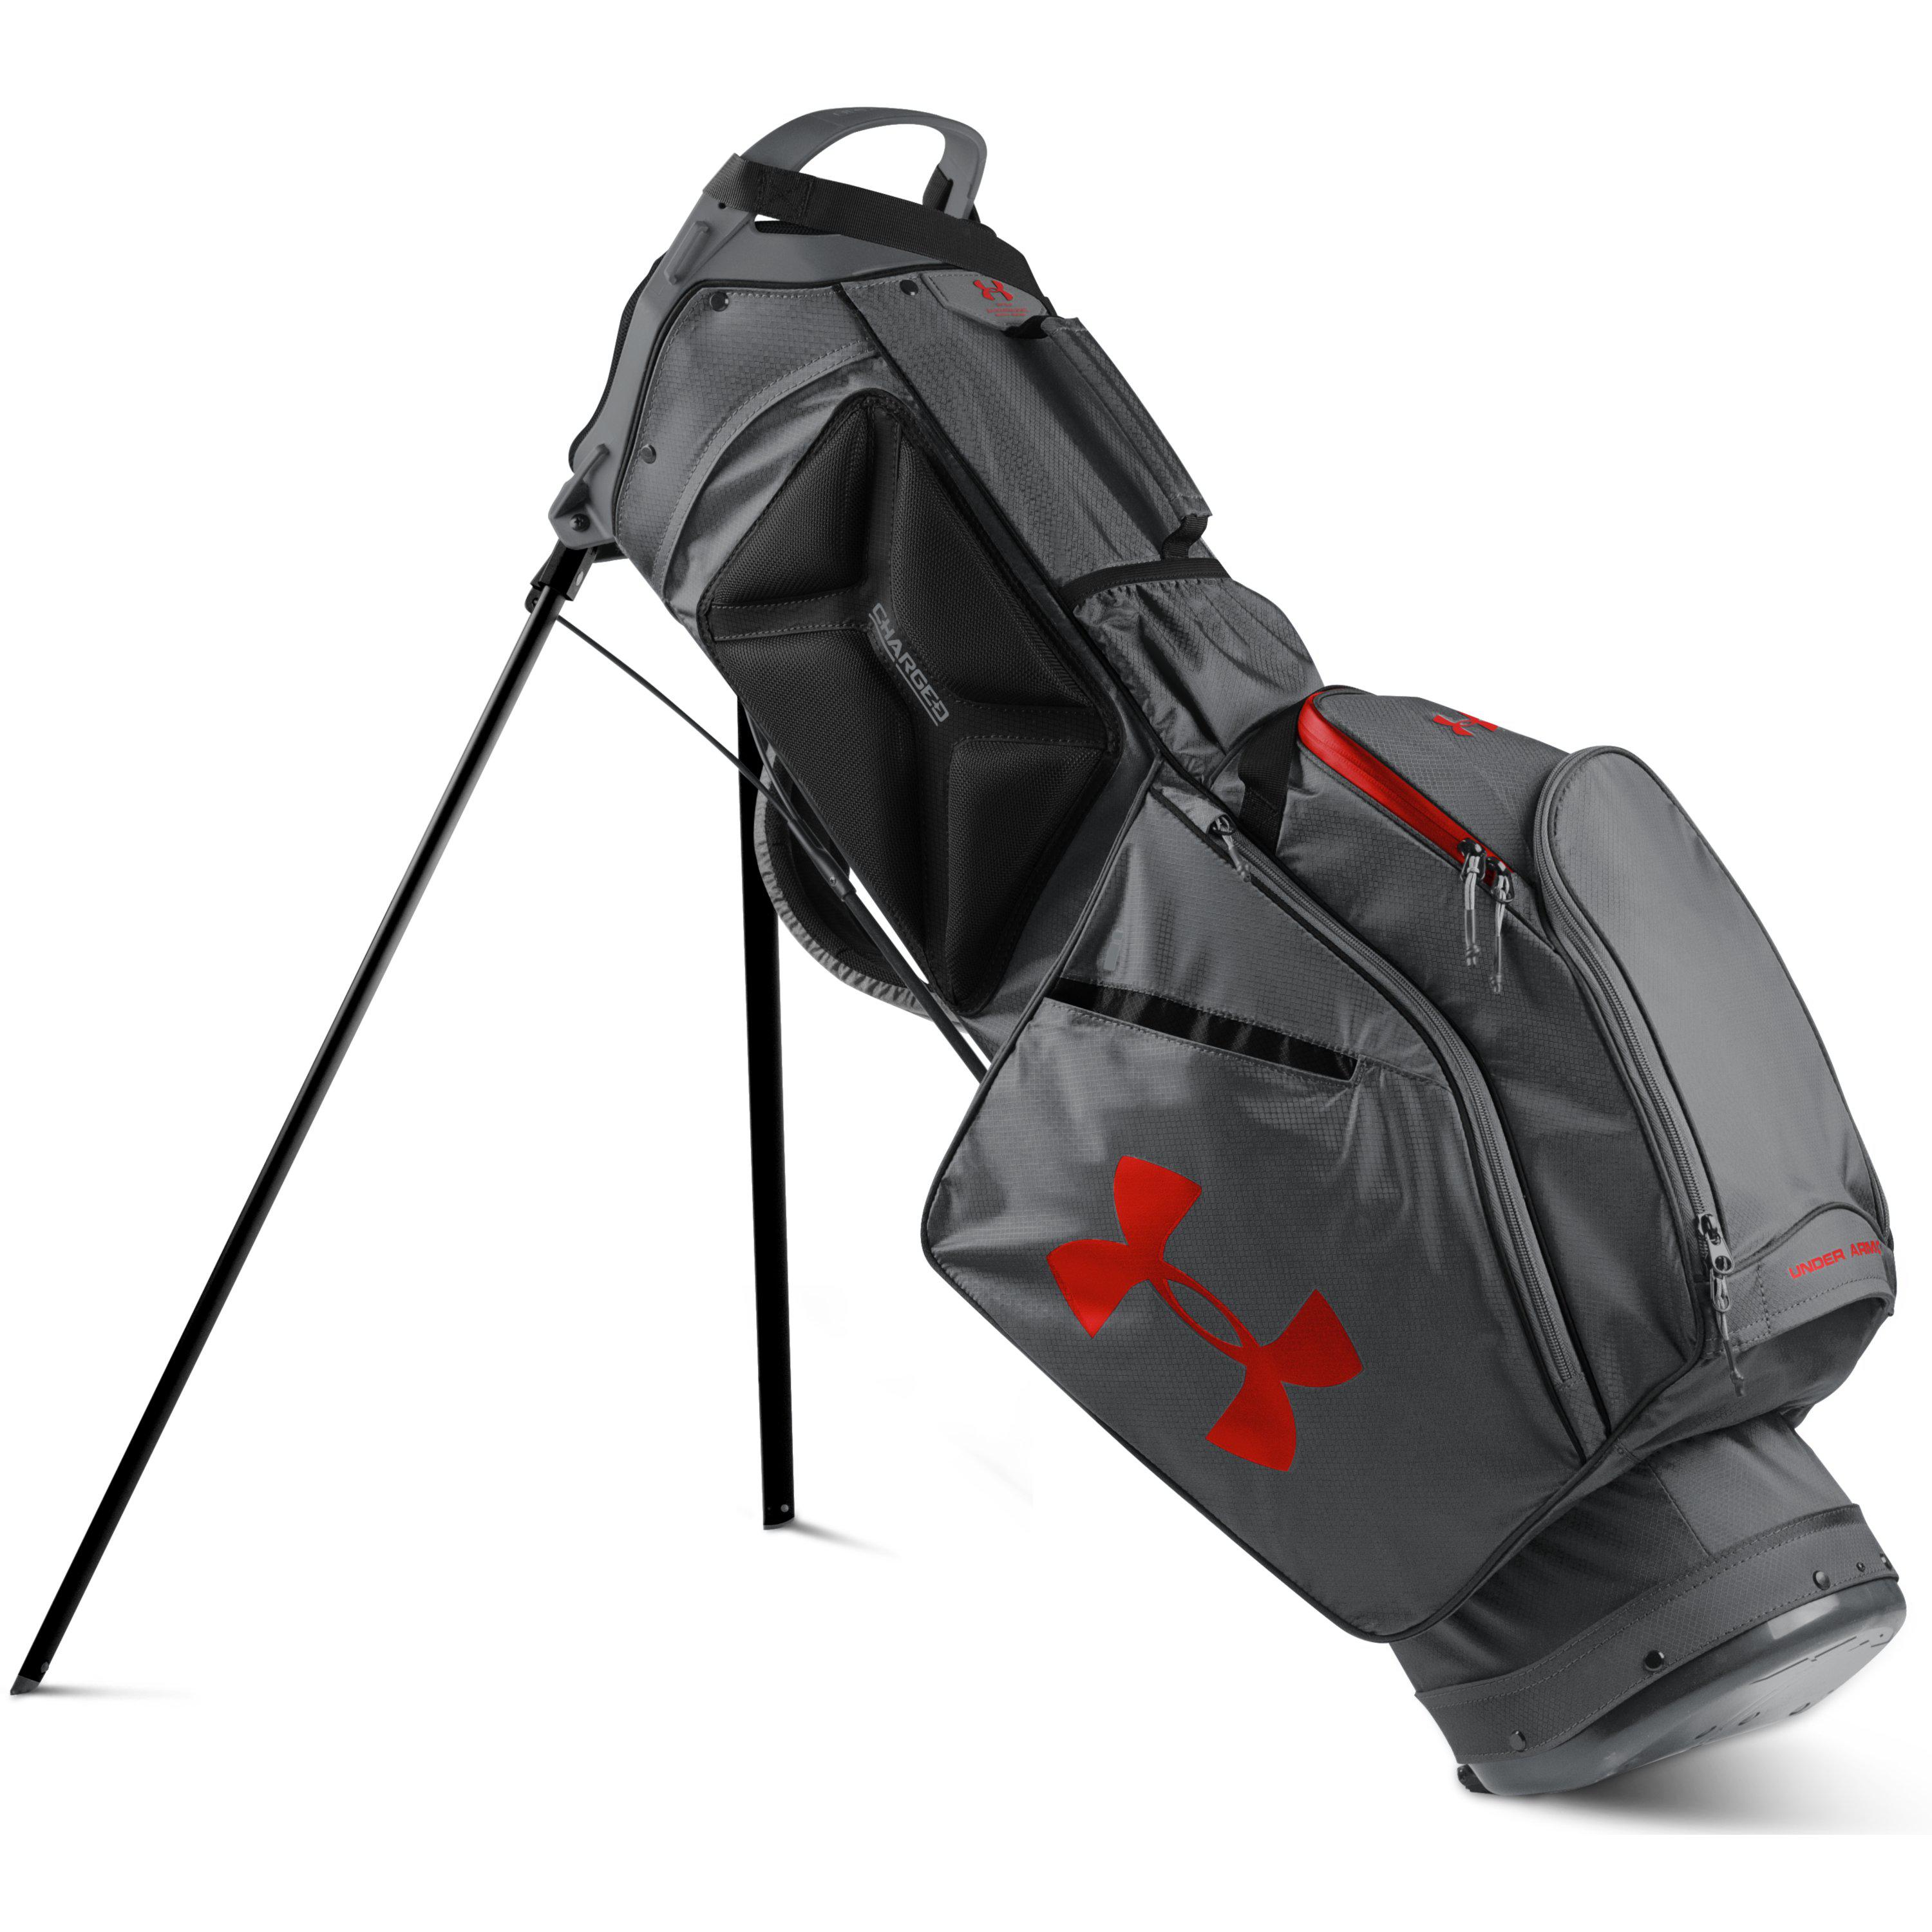 Storm Speedround Golf Bag in Graphite 